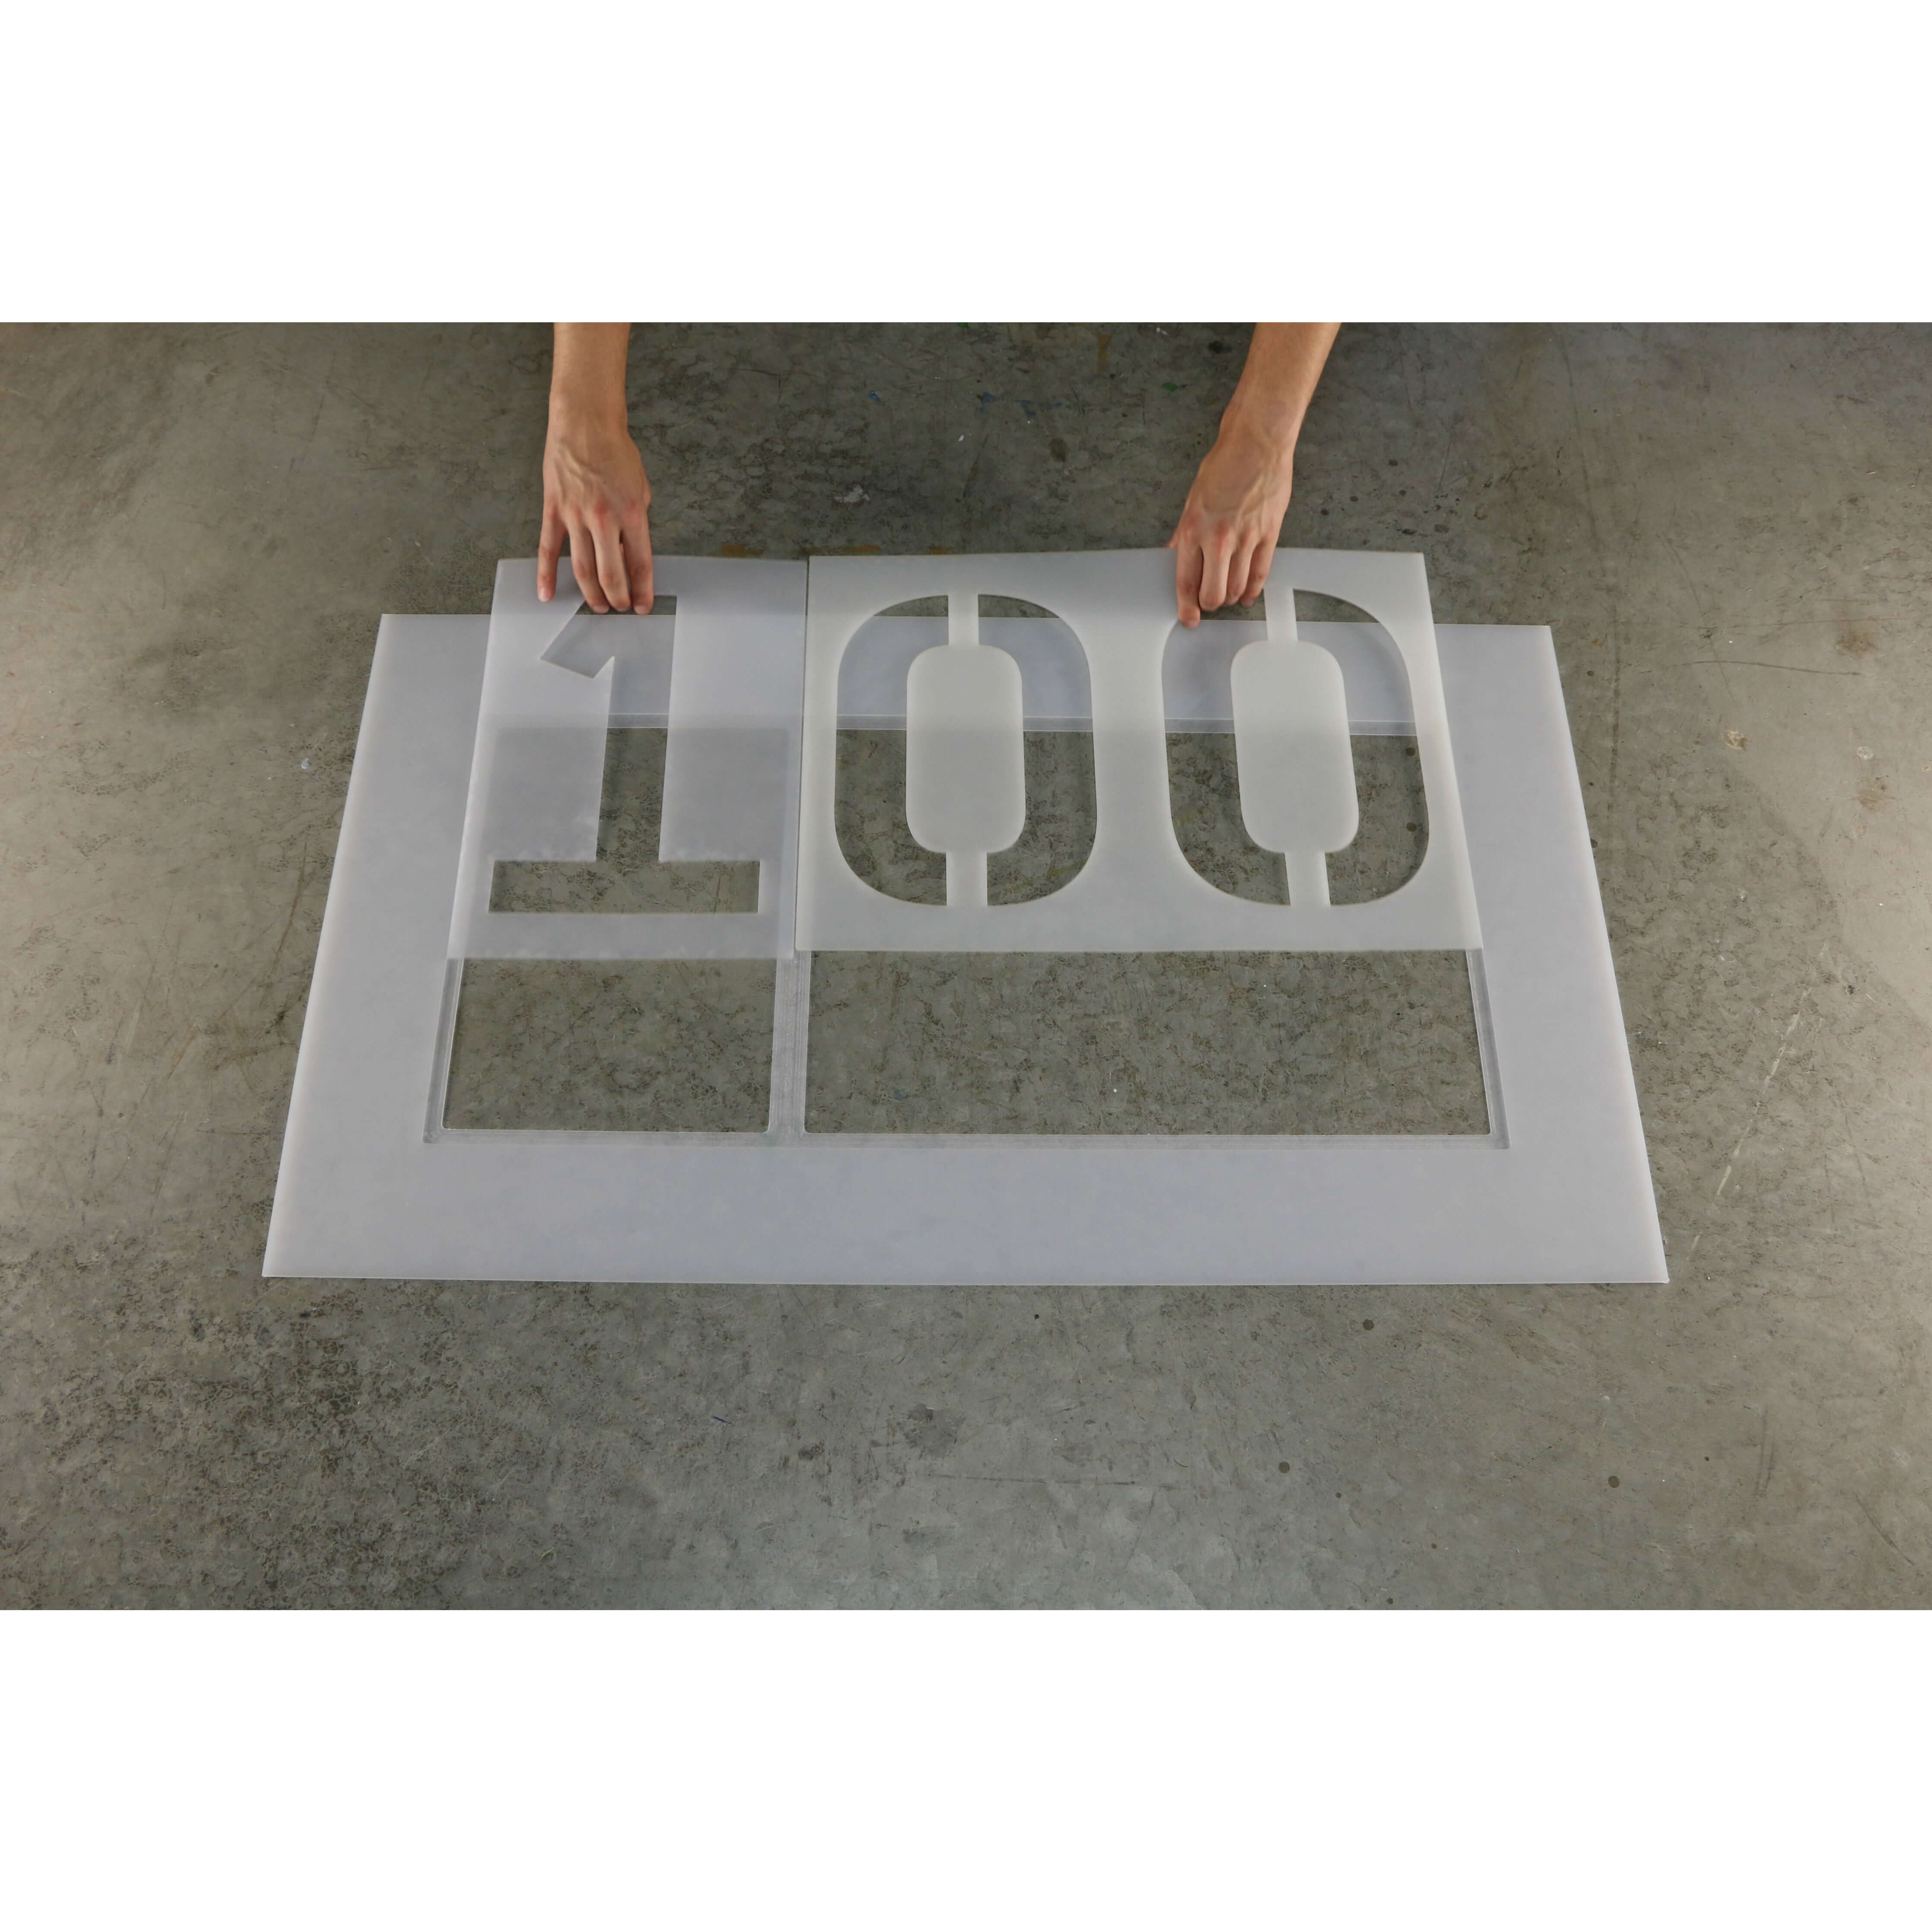 10 2 Digit Number Stencil Kit 00-99 — 1-800-Stencil